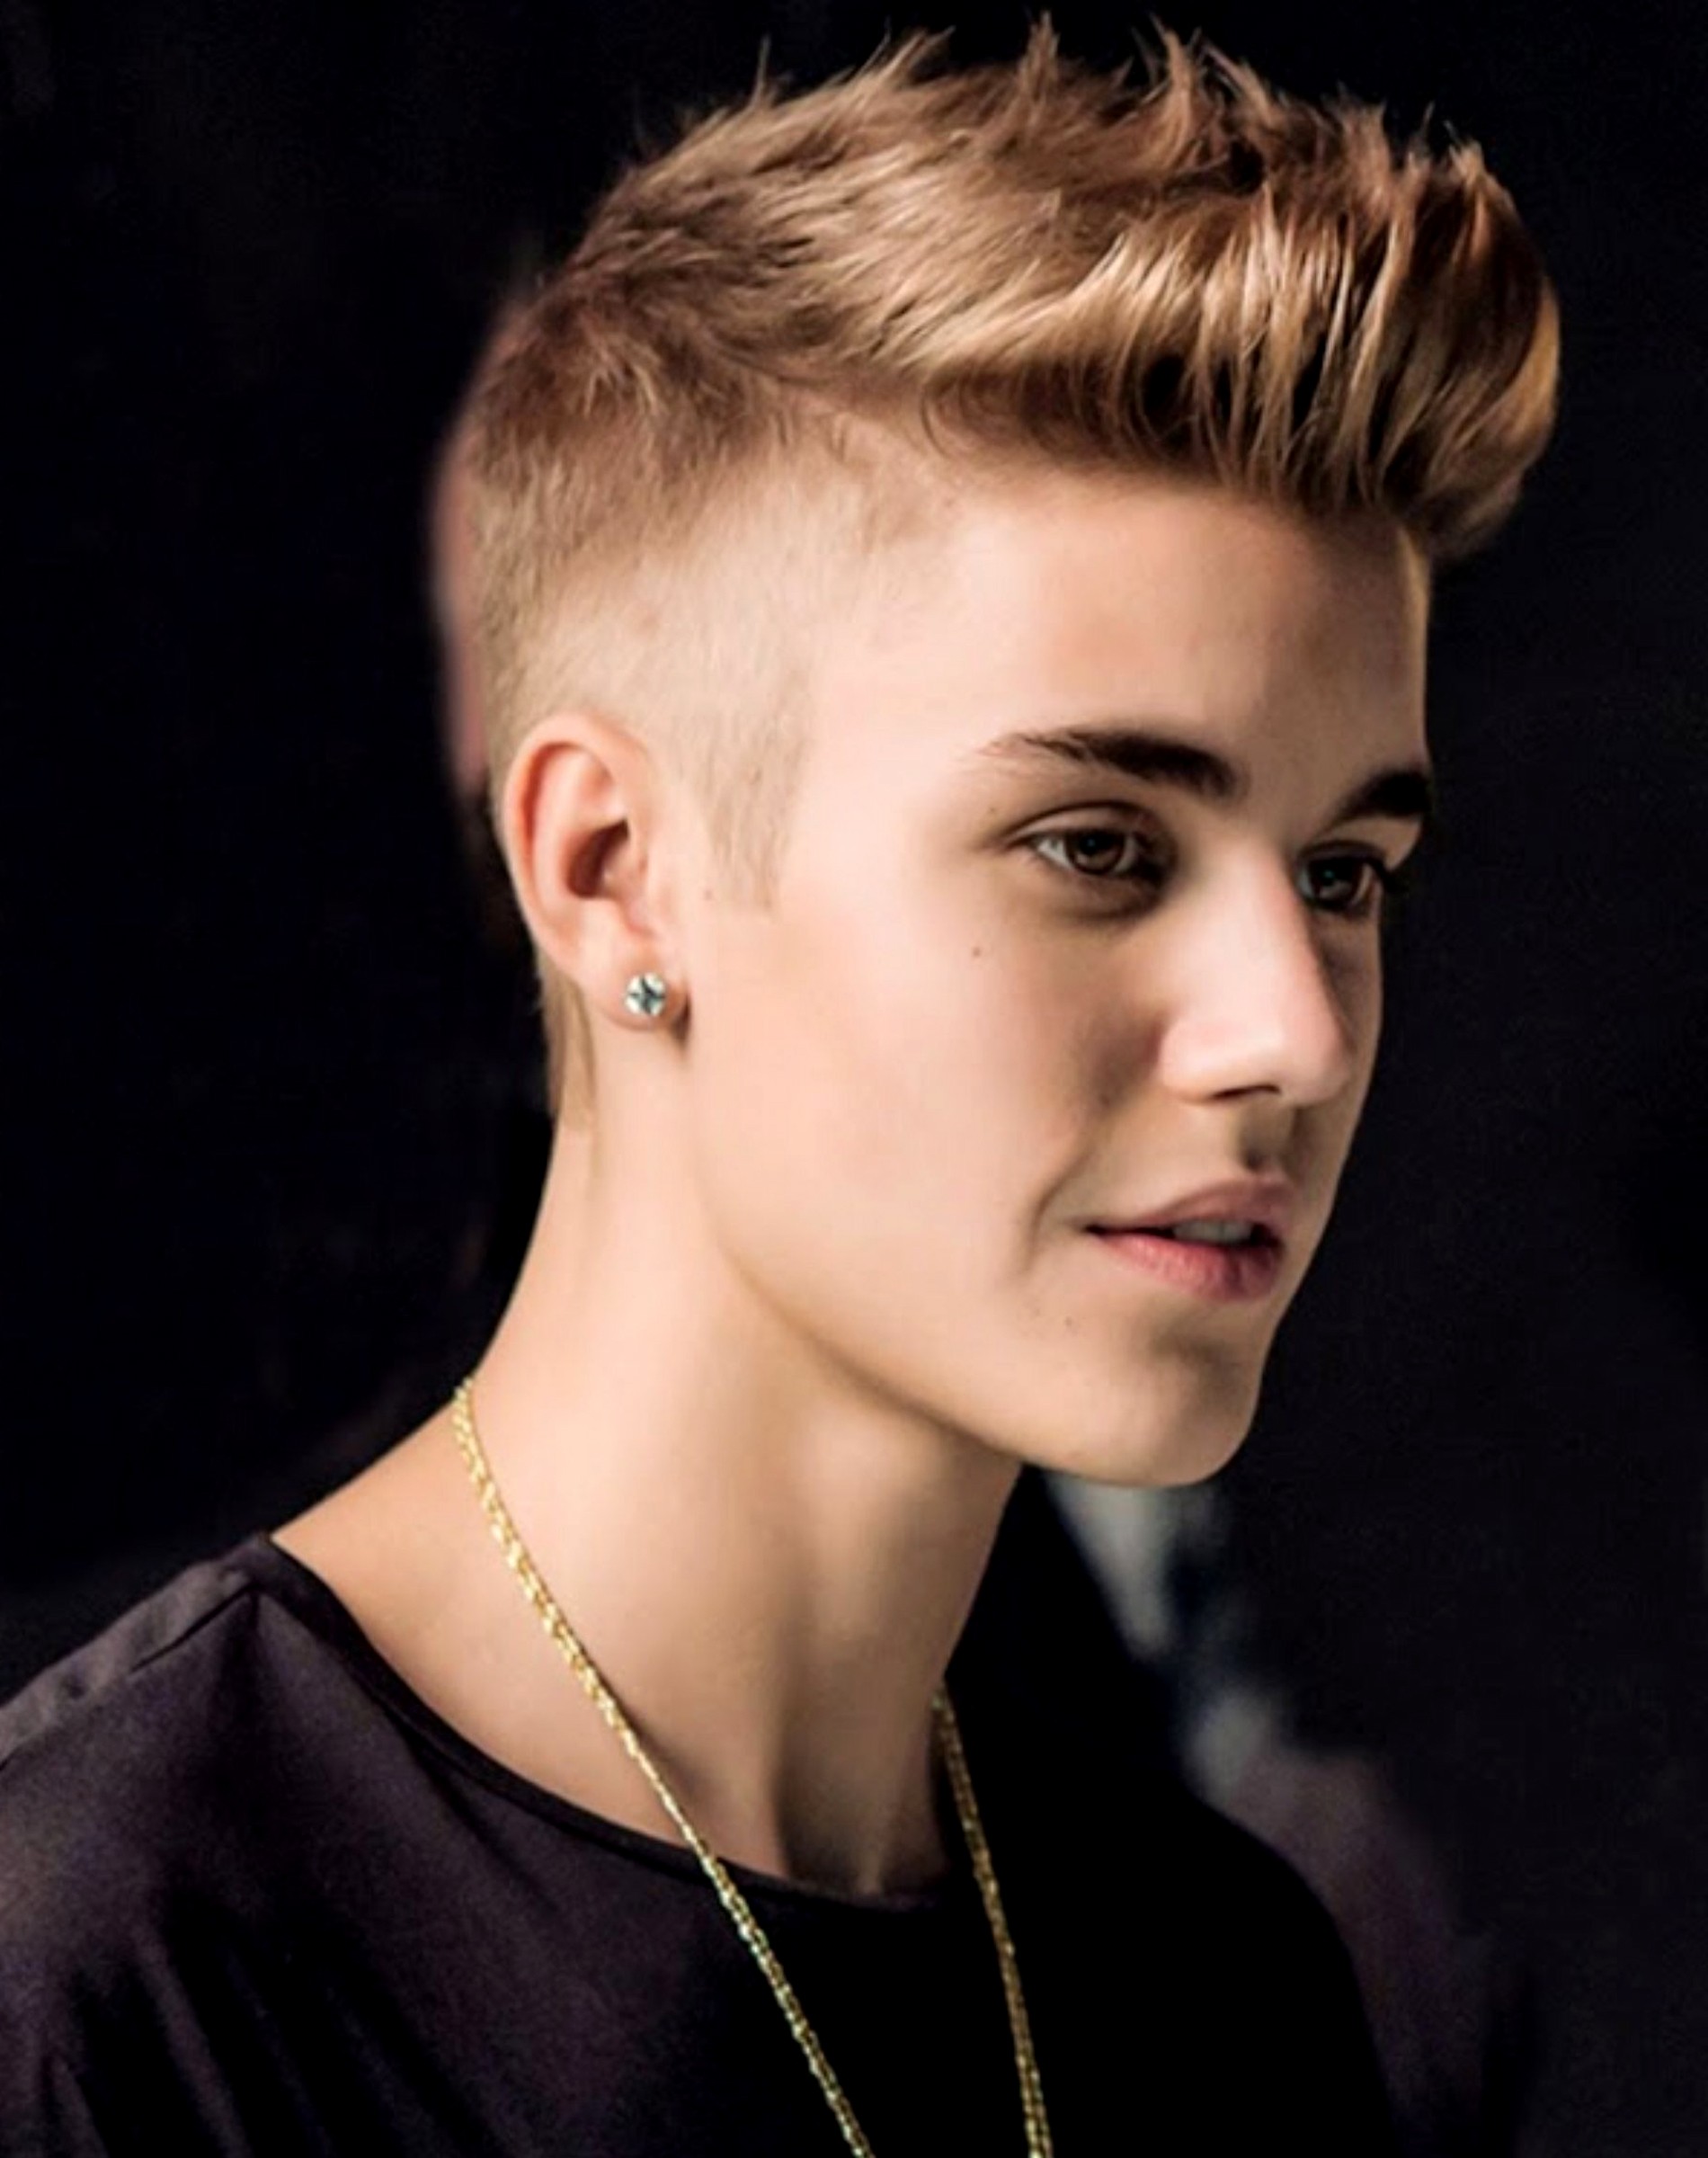 Justin Bieber justin bieber images for facebook – Fine HD ...